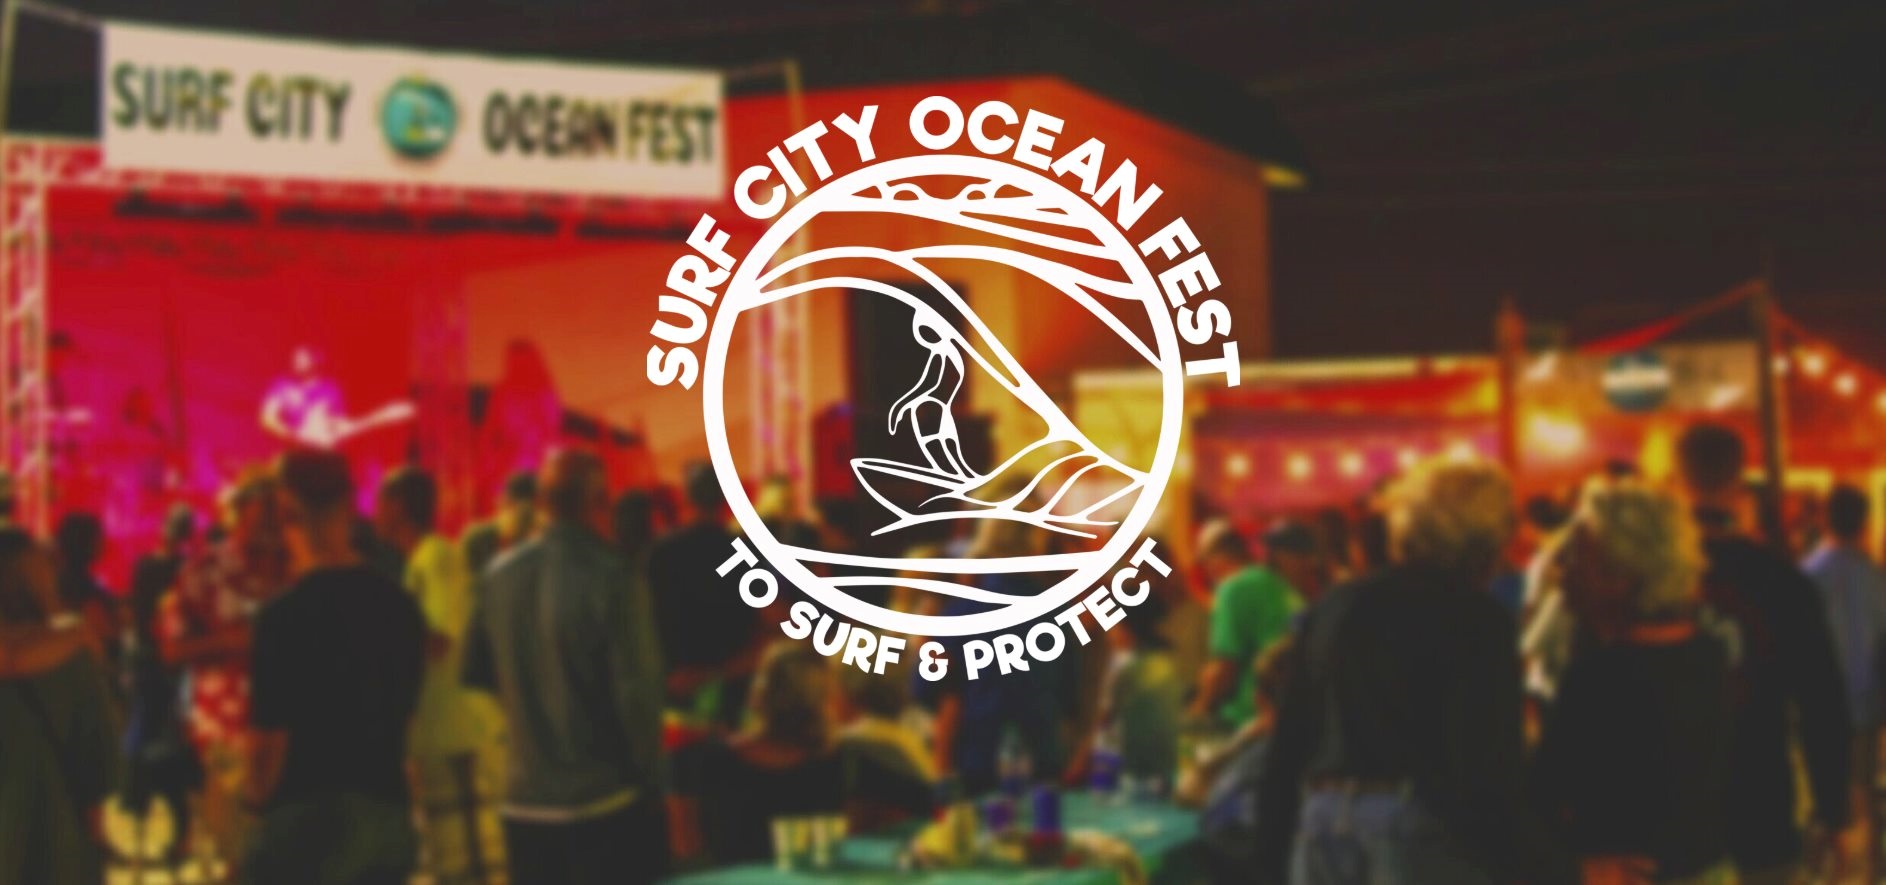 Surf City Ocean Fest